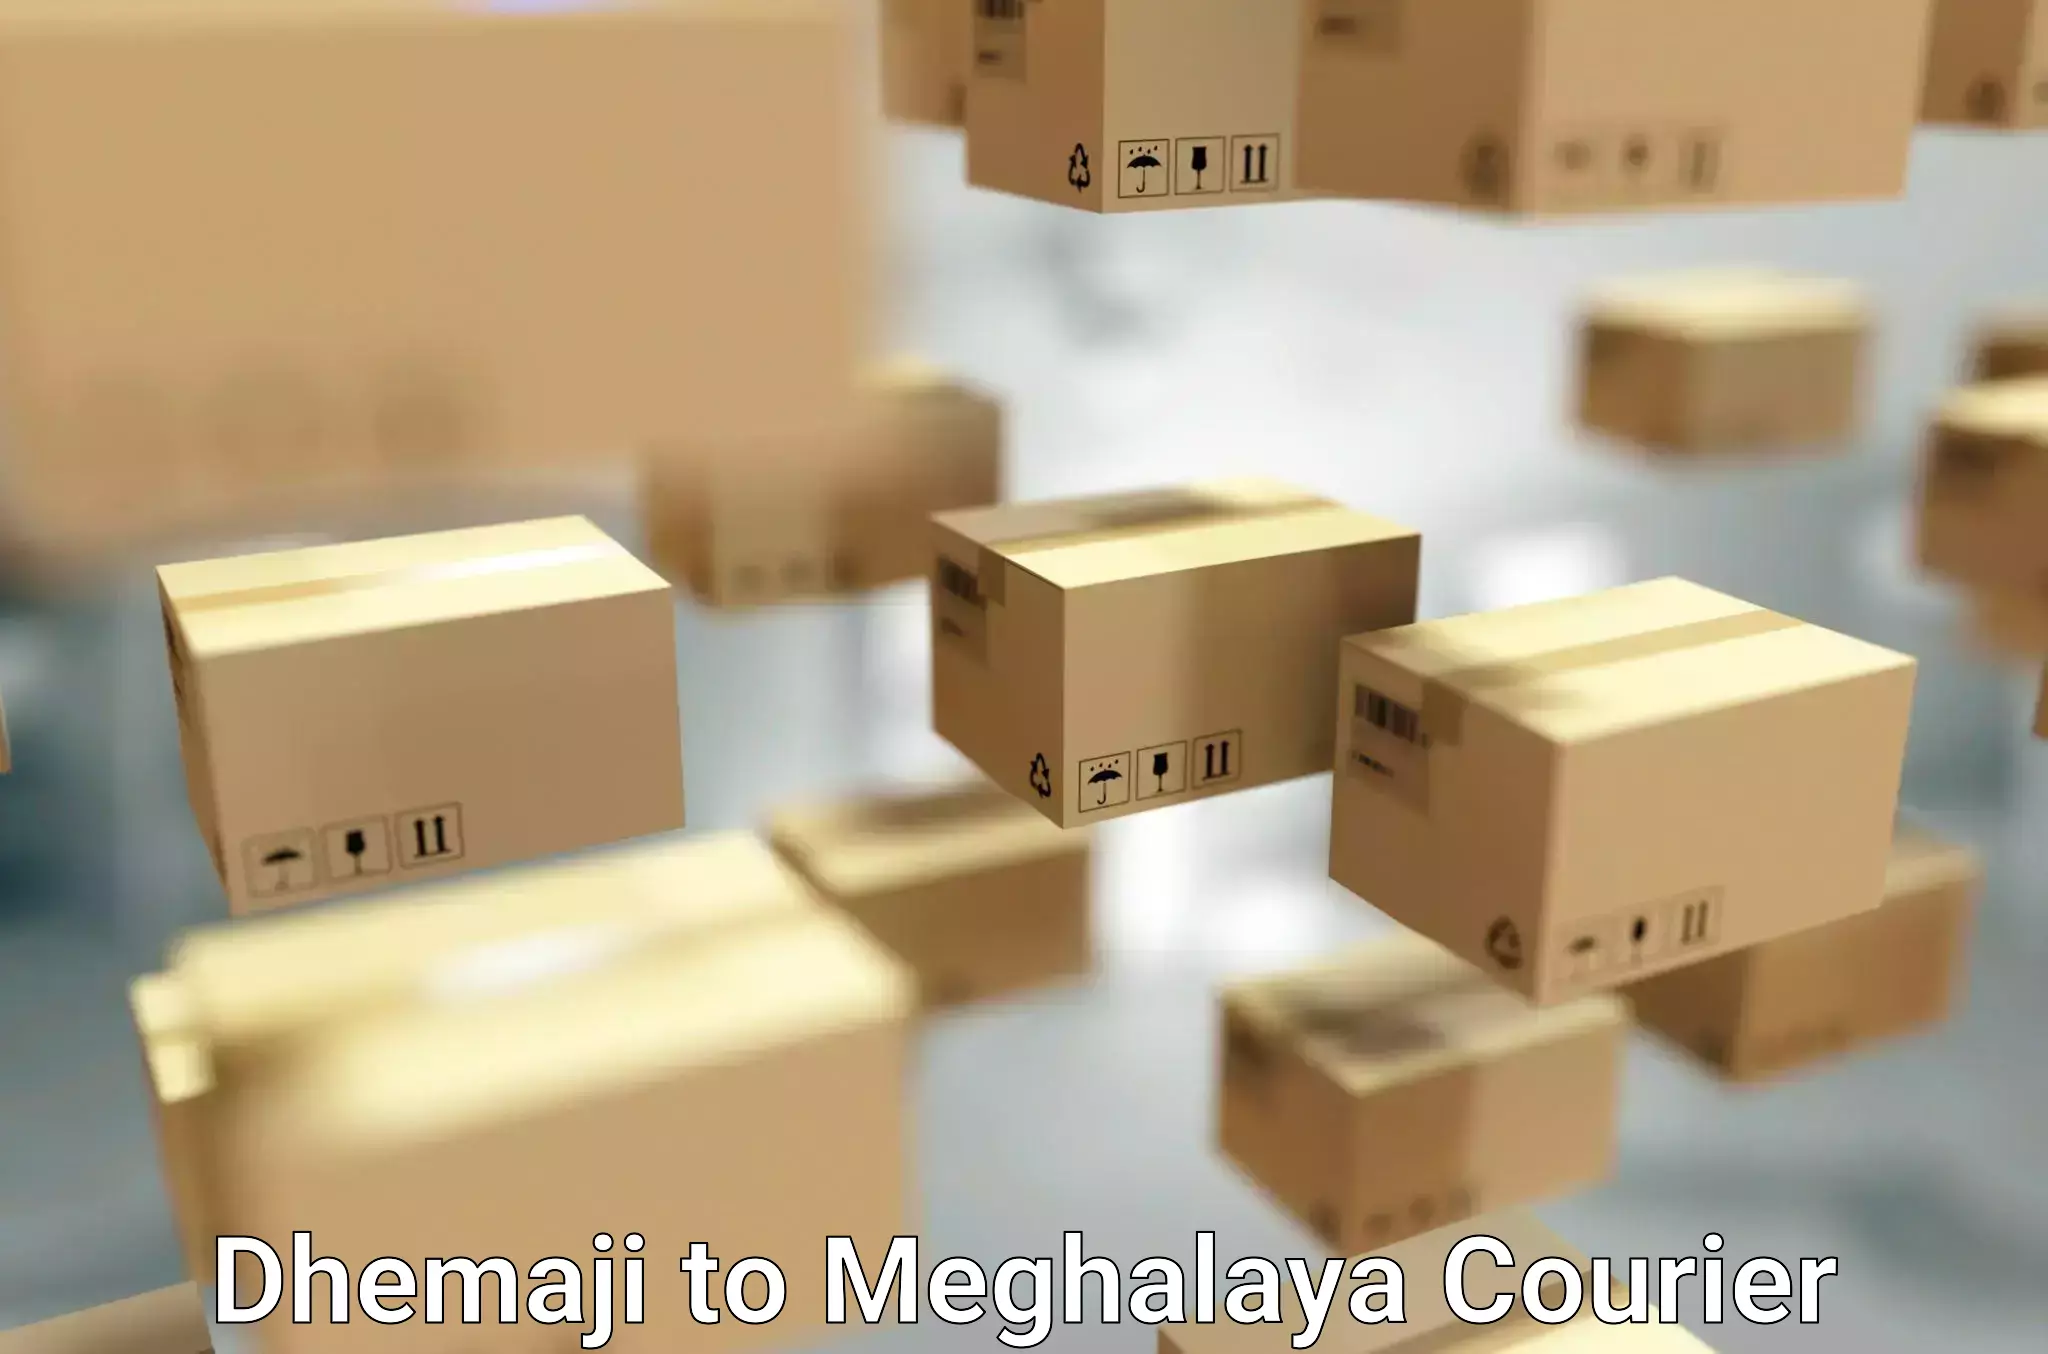 Residential moving experts Dhemaji to Meghalaya